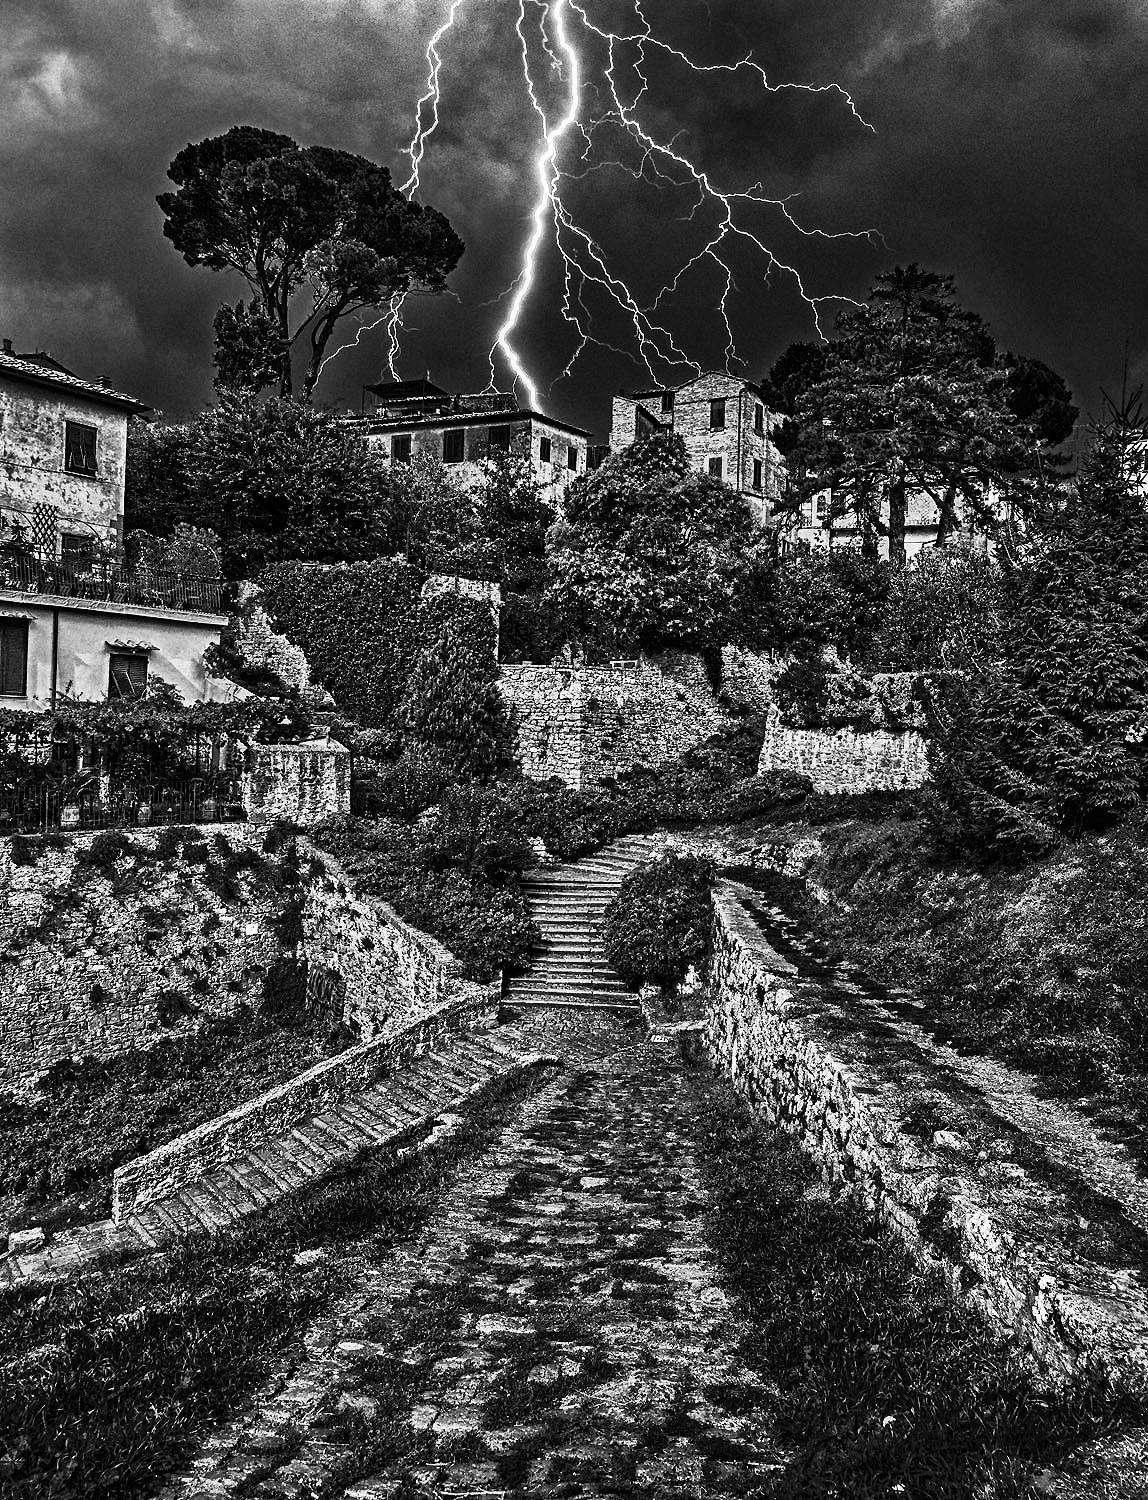 Storm, Volterra, Italy, 2015 par Hank Gans est une photographie de paysage en noir et blanc de 24" x 18" capturant une tempête à Volterra, une ville fortifiée au sud-ouest de Florence en Toscane. 

Des formes triangulaires définissent la